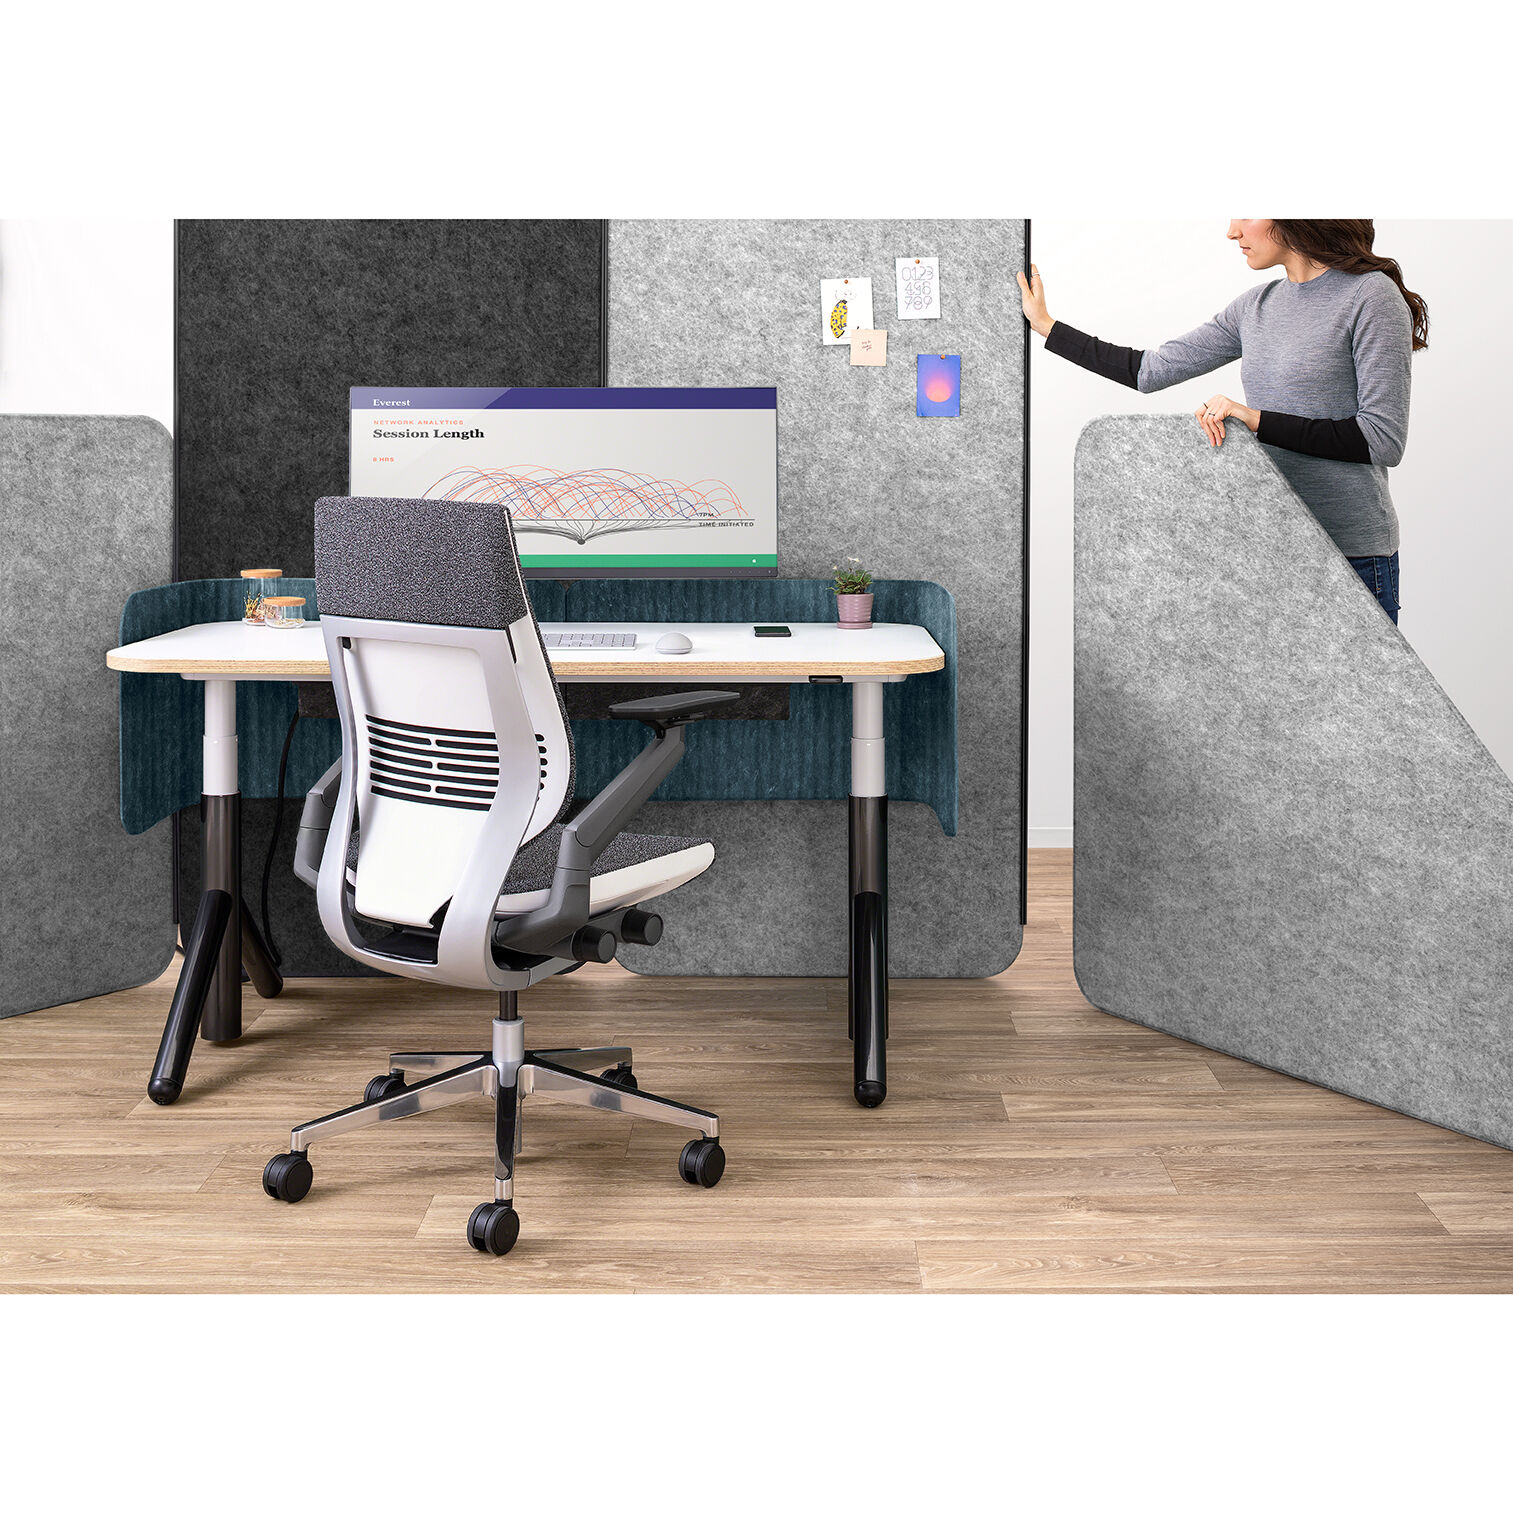 Steelcase FLEX COLLECTION PC-Halterung für höhenverstellbare Schreibtische